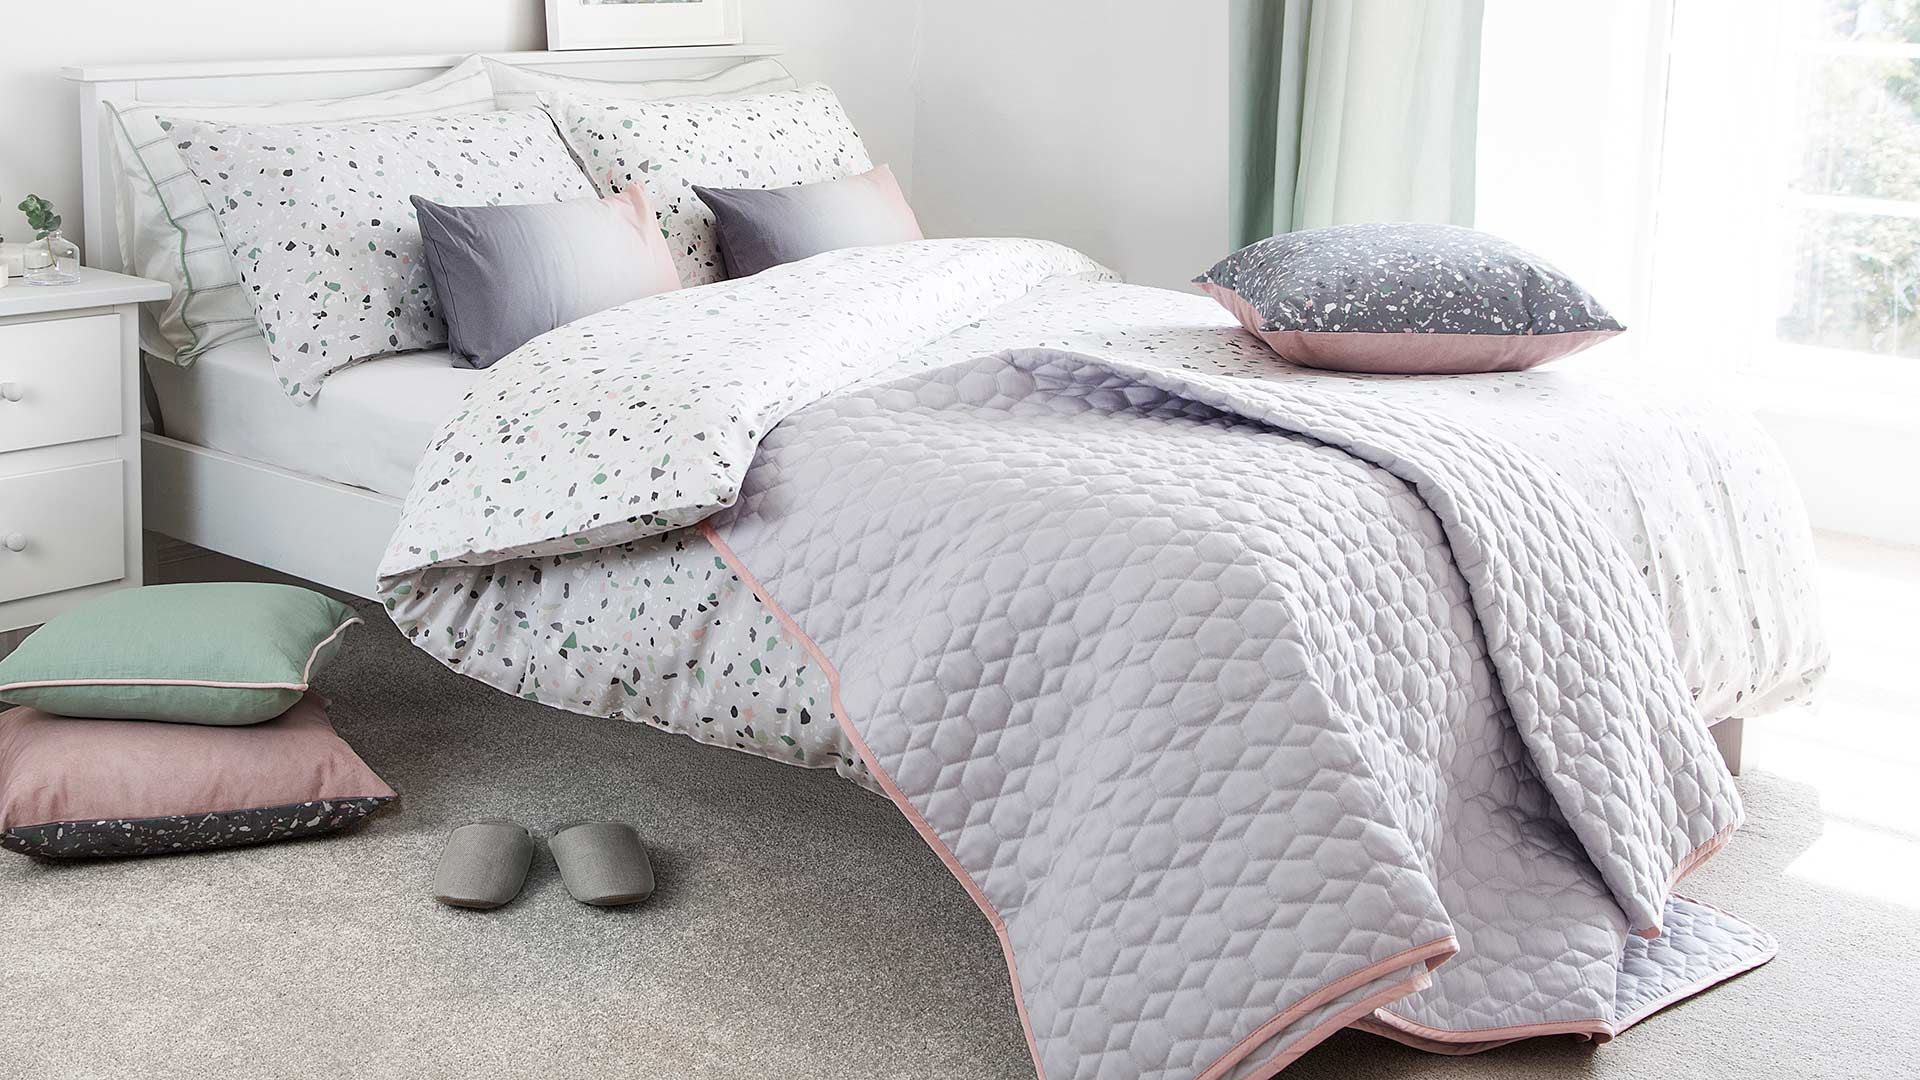 10 Jenis Bed Cover Untuk Tempat Tidur Idaman Dan Nyaman